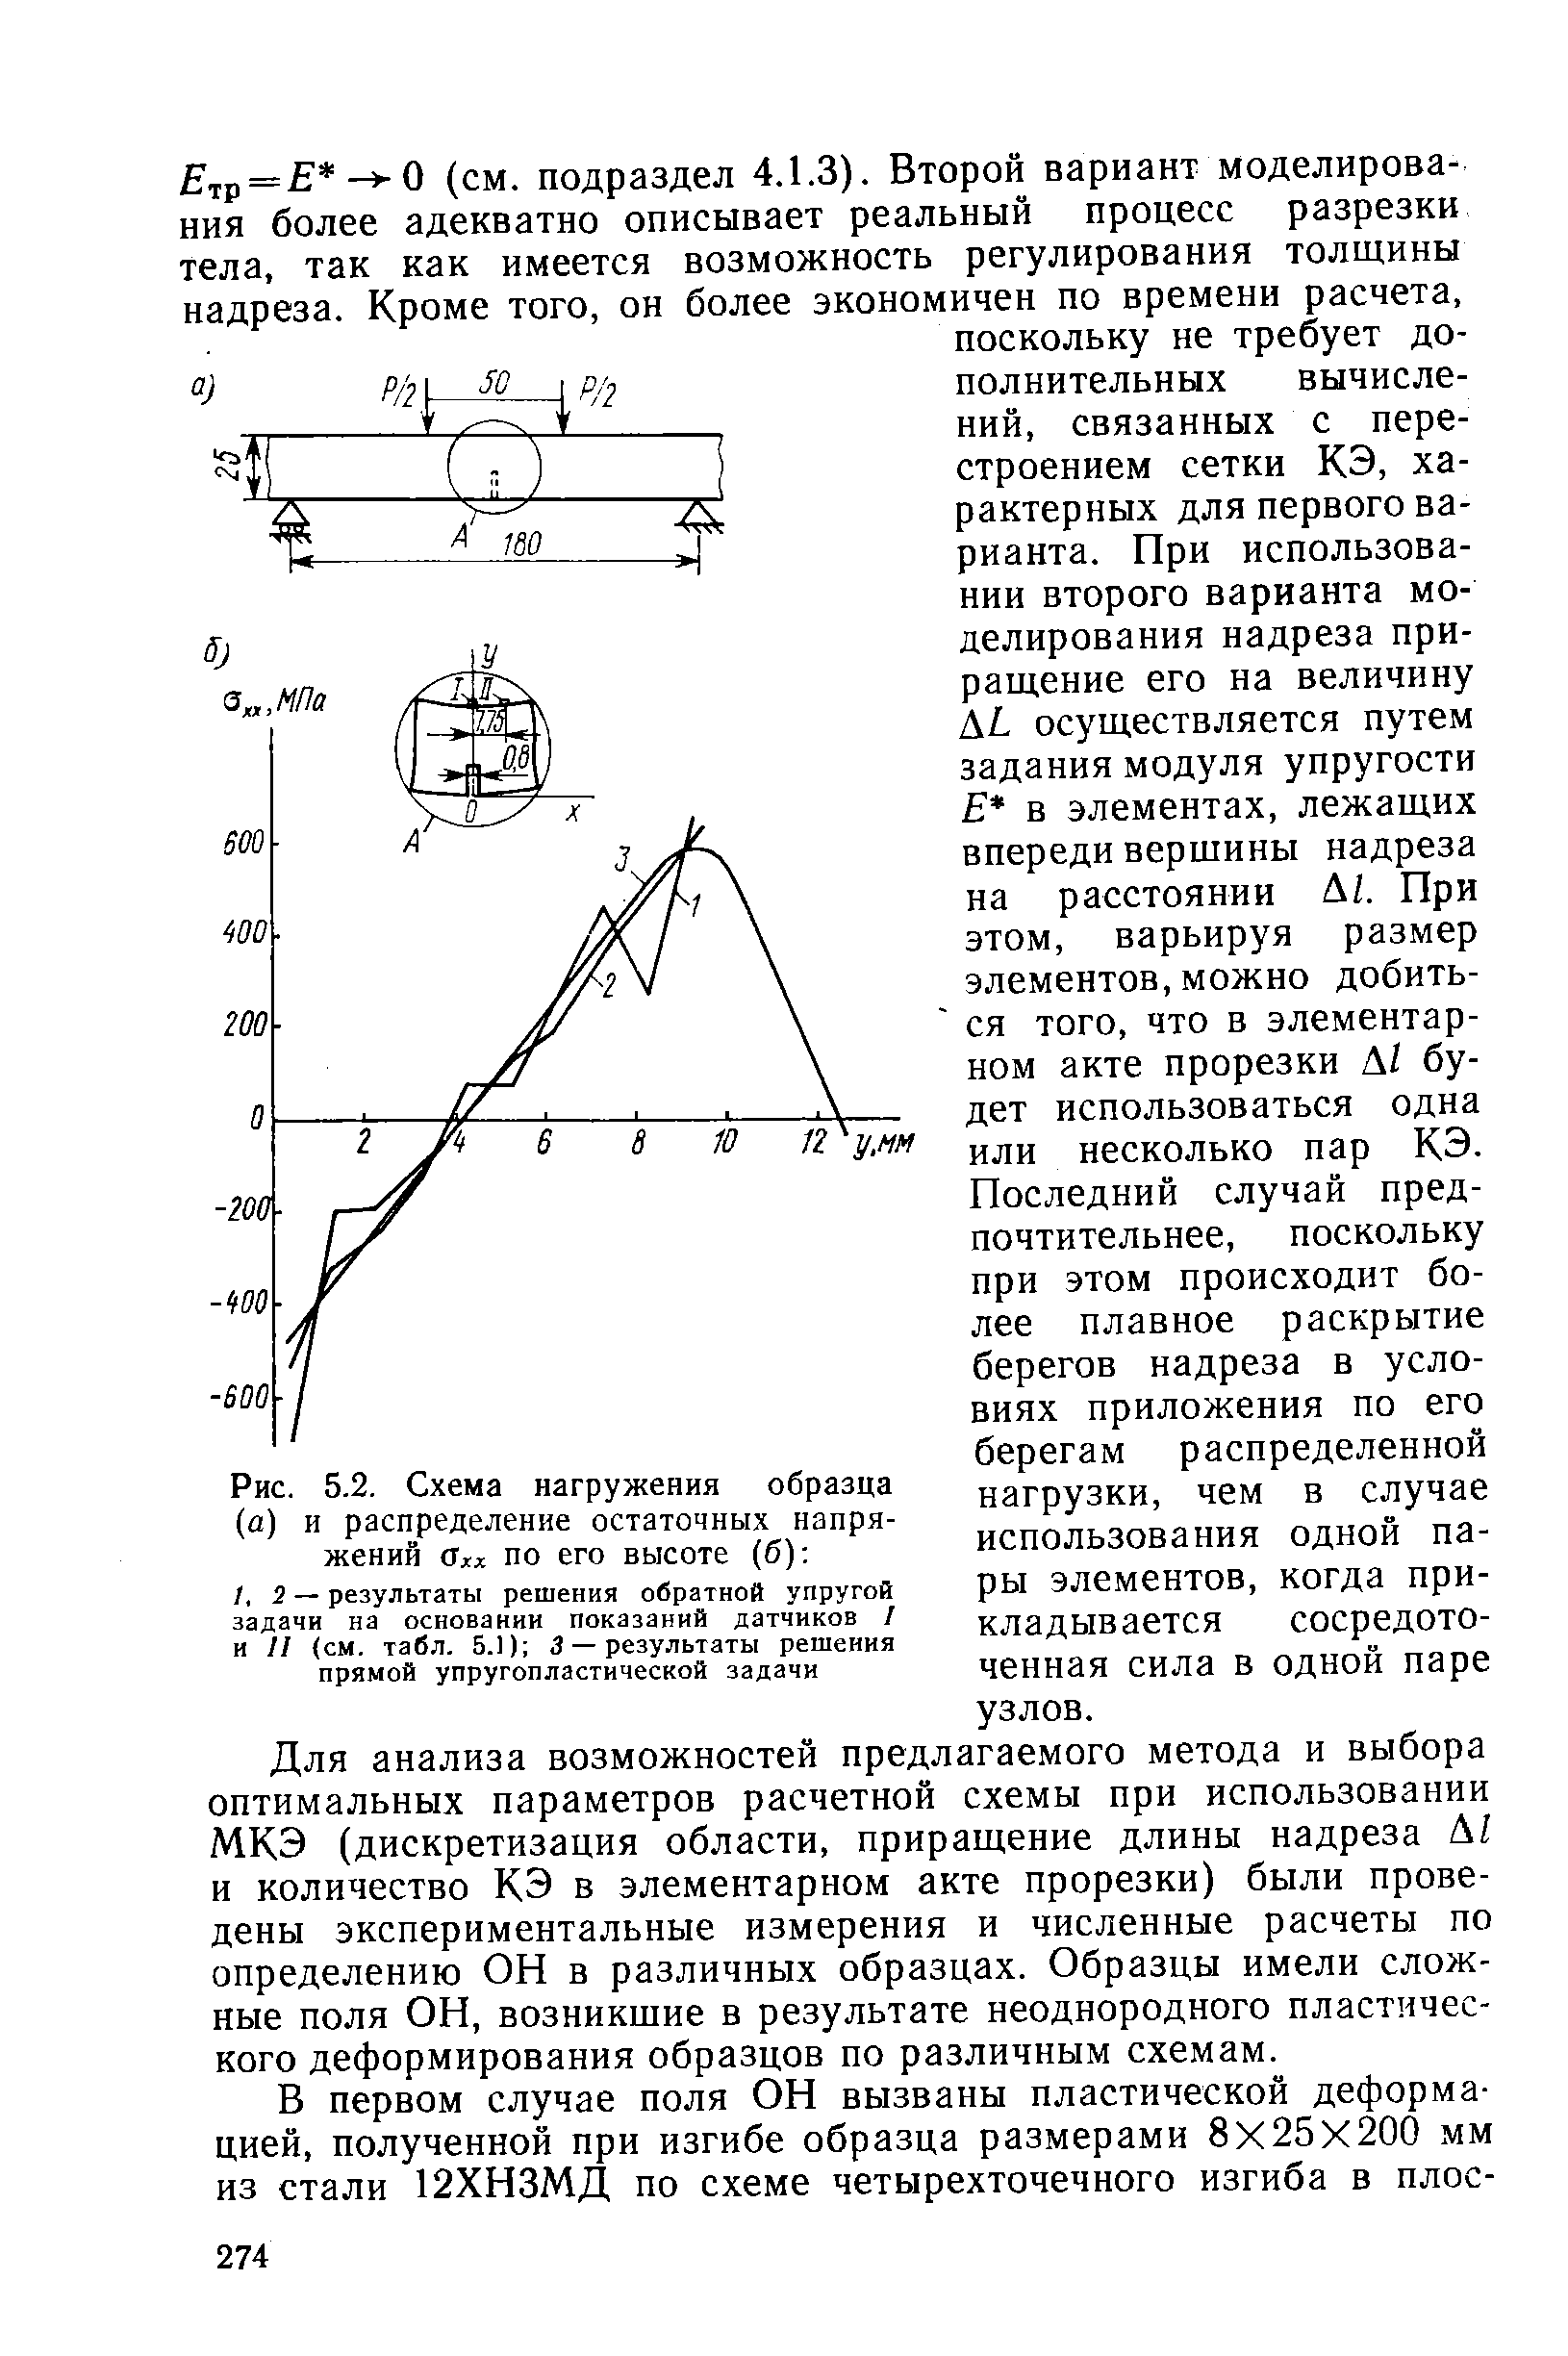 Рис. 5.2. Схема нагружения образца (а) и распределение остаточных напряжений Охх по его высоте (б) 
